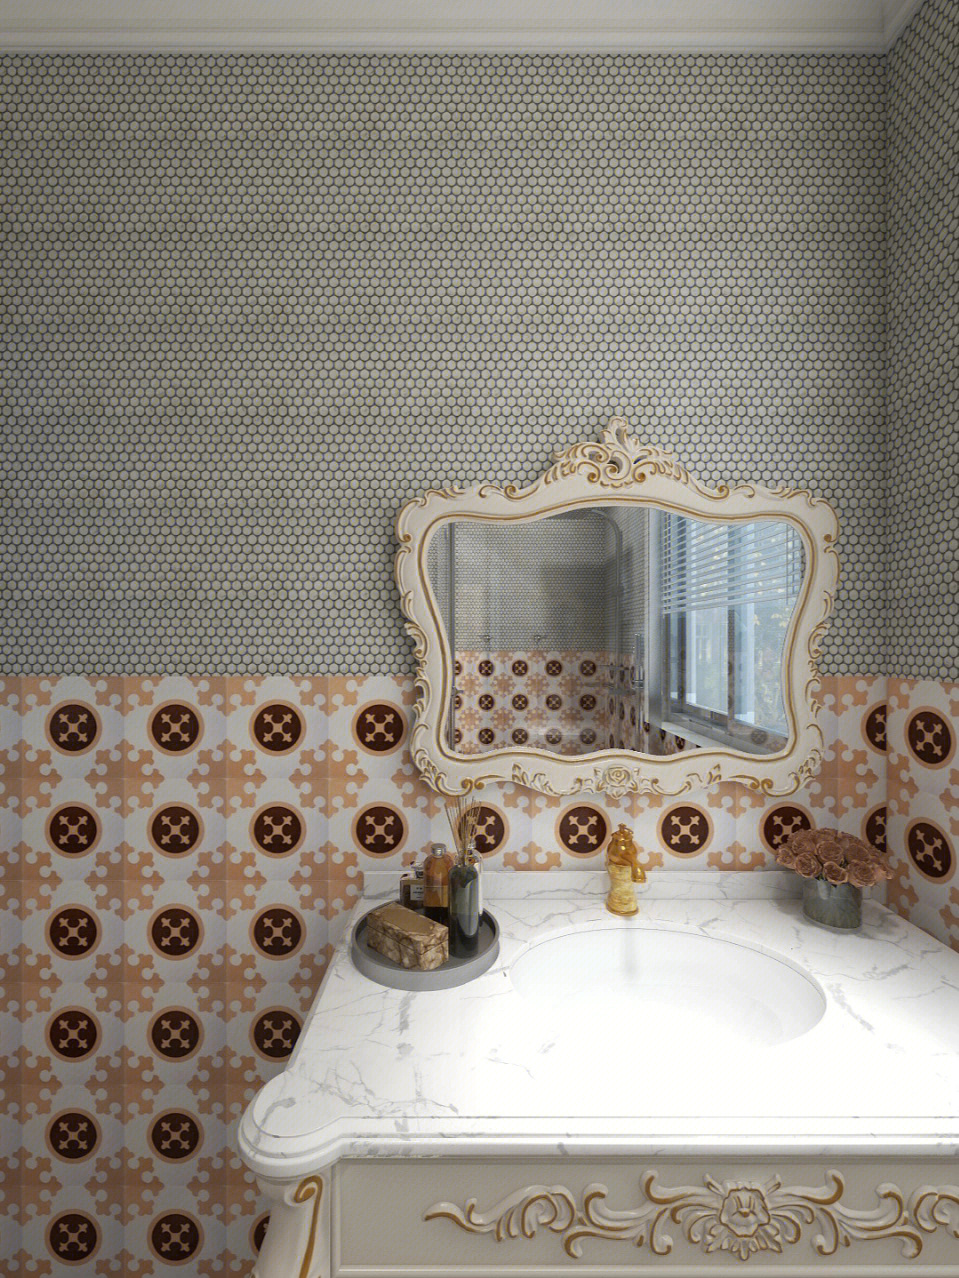 97欧式风格卫浴,背景墙使用圆形细闪石材马赛克和浅橙色复古花砖